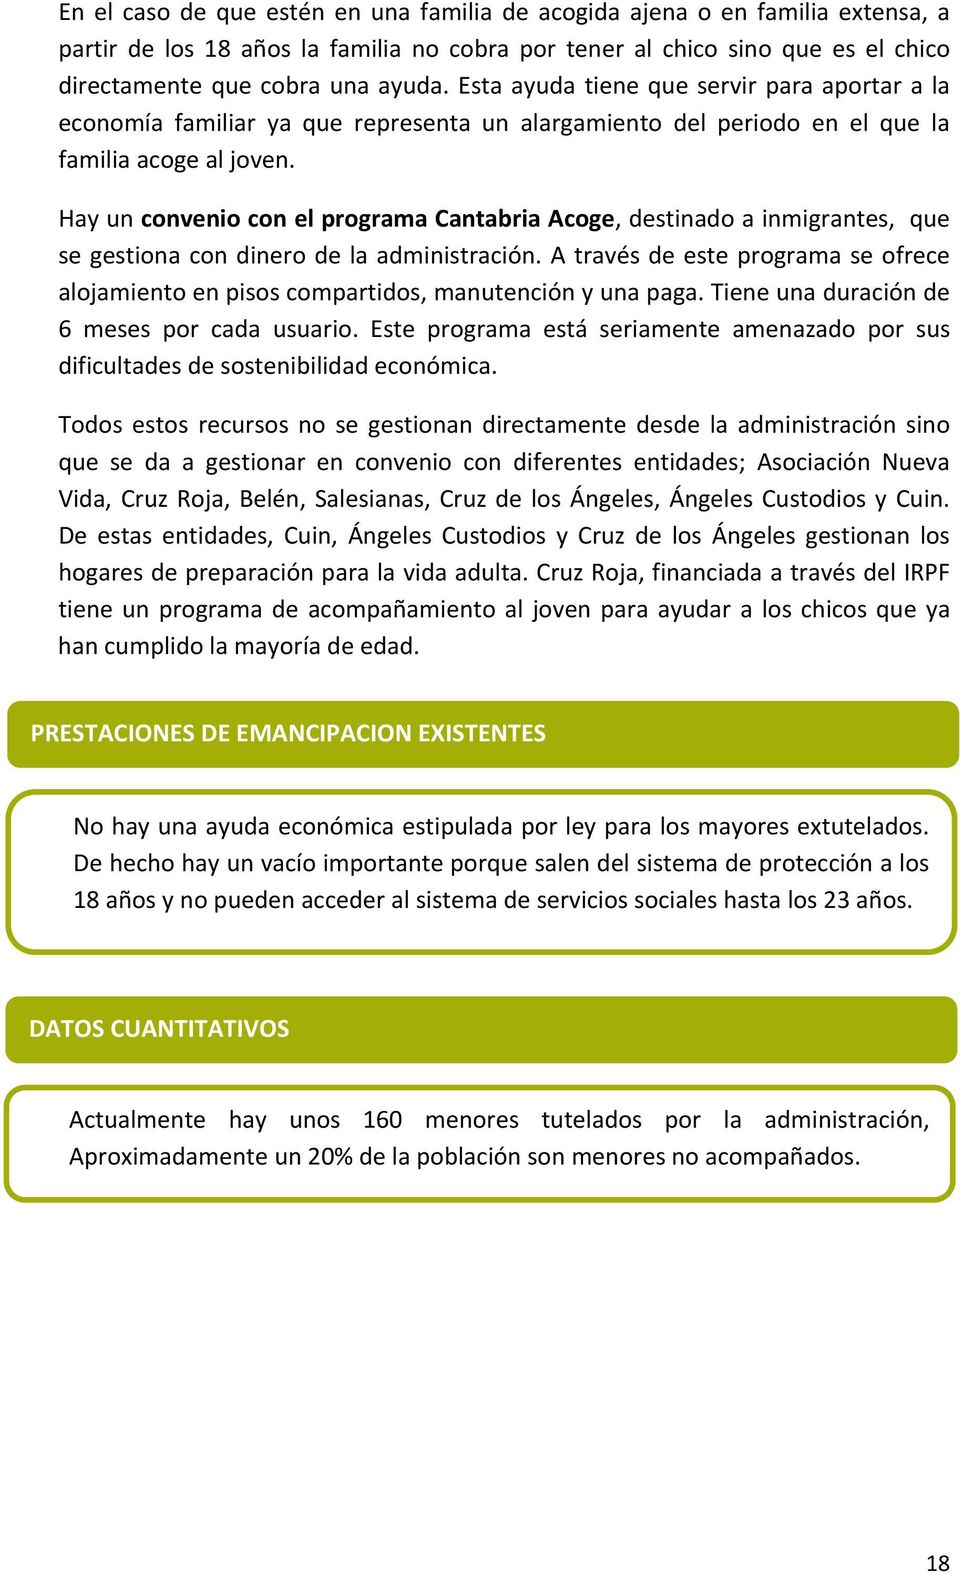 Hay un convenio con el programa Cantabria Acoge, destinado a inmigrantes, que se gestiona con dinero de la administración.